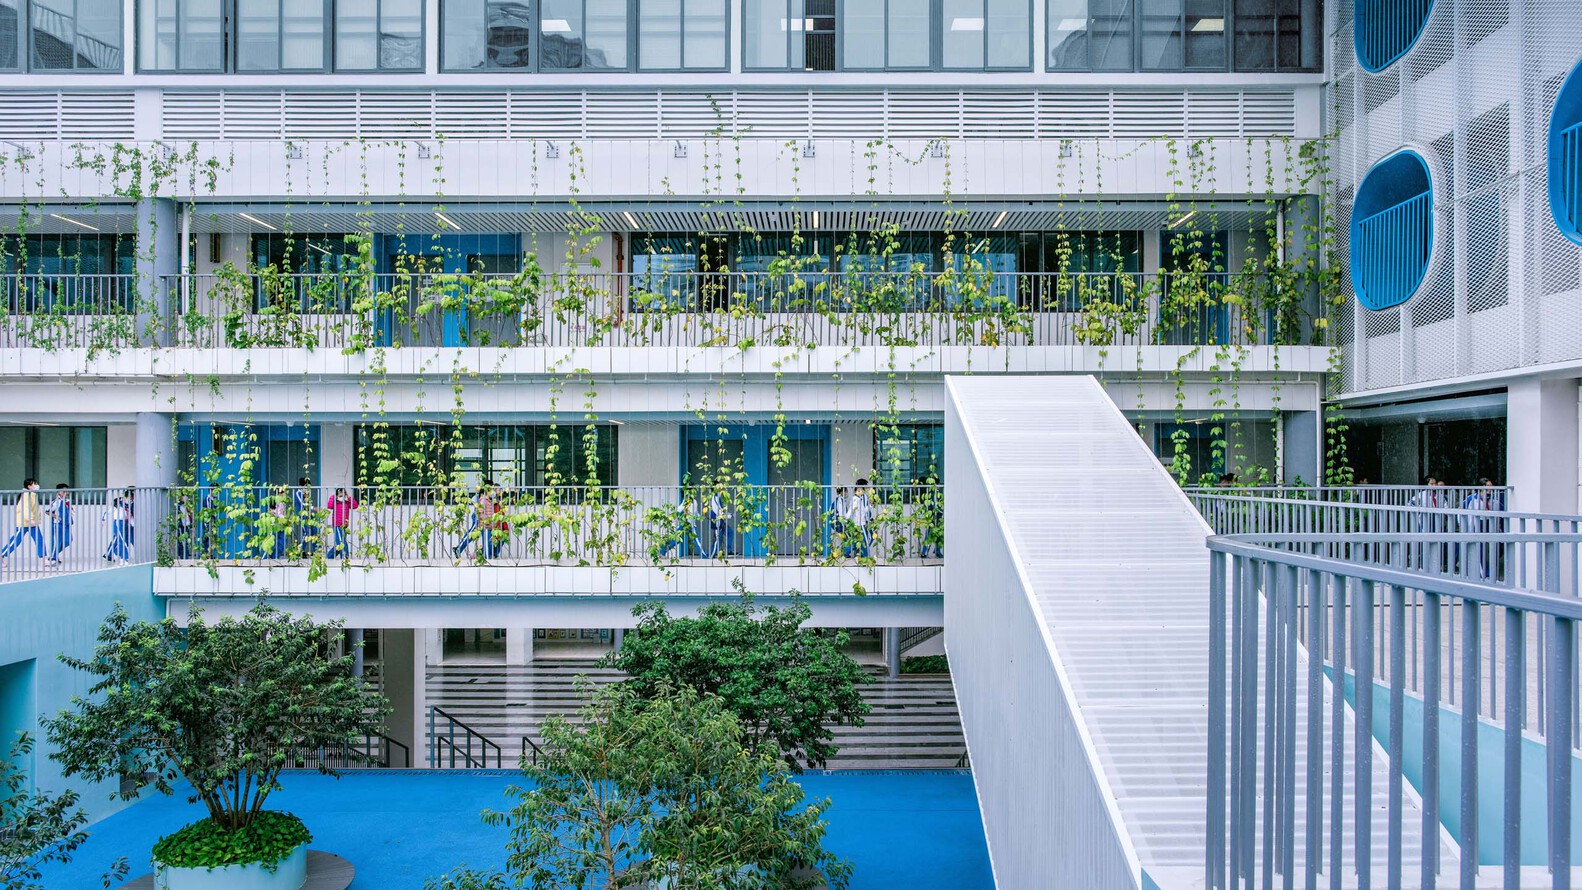 Greening in school buildings vertically